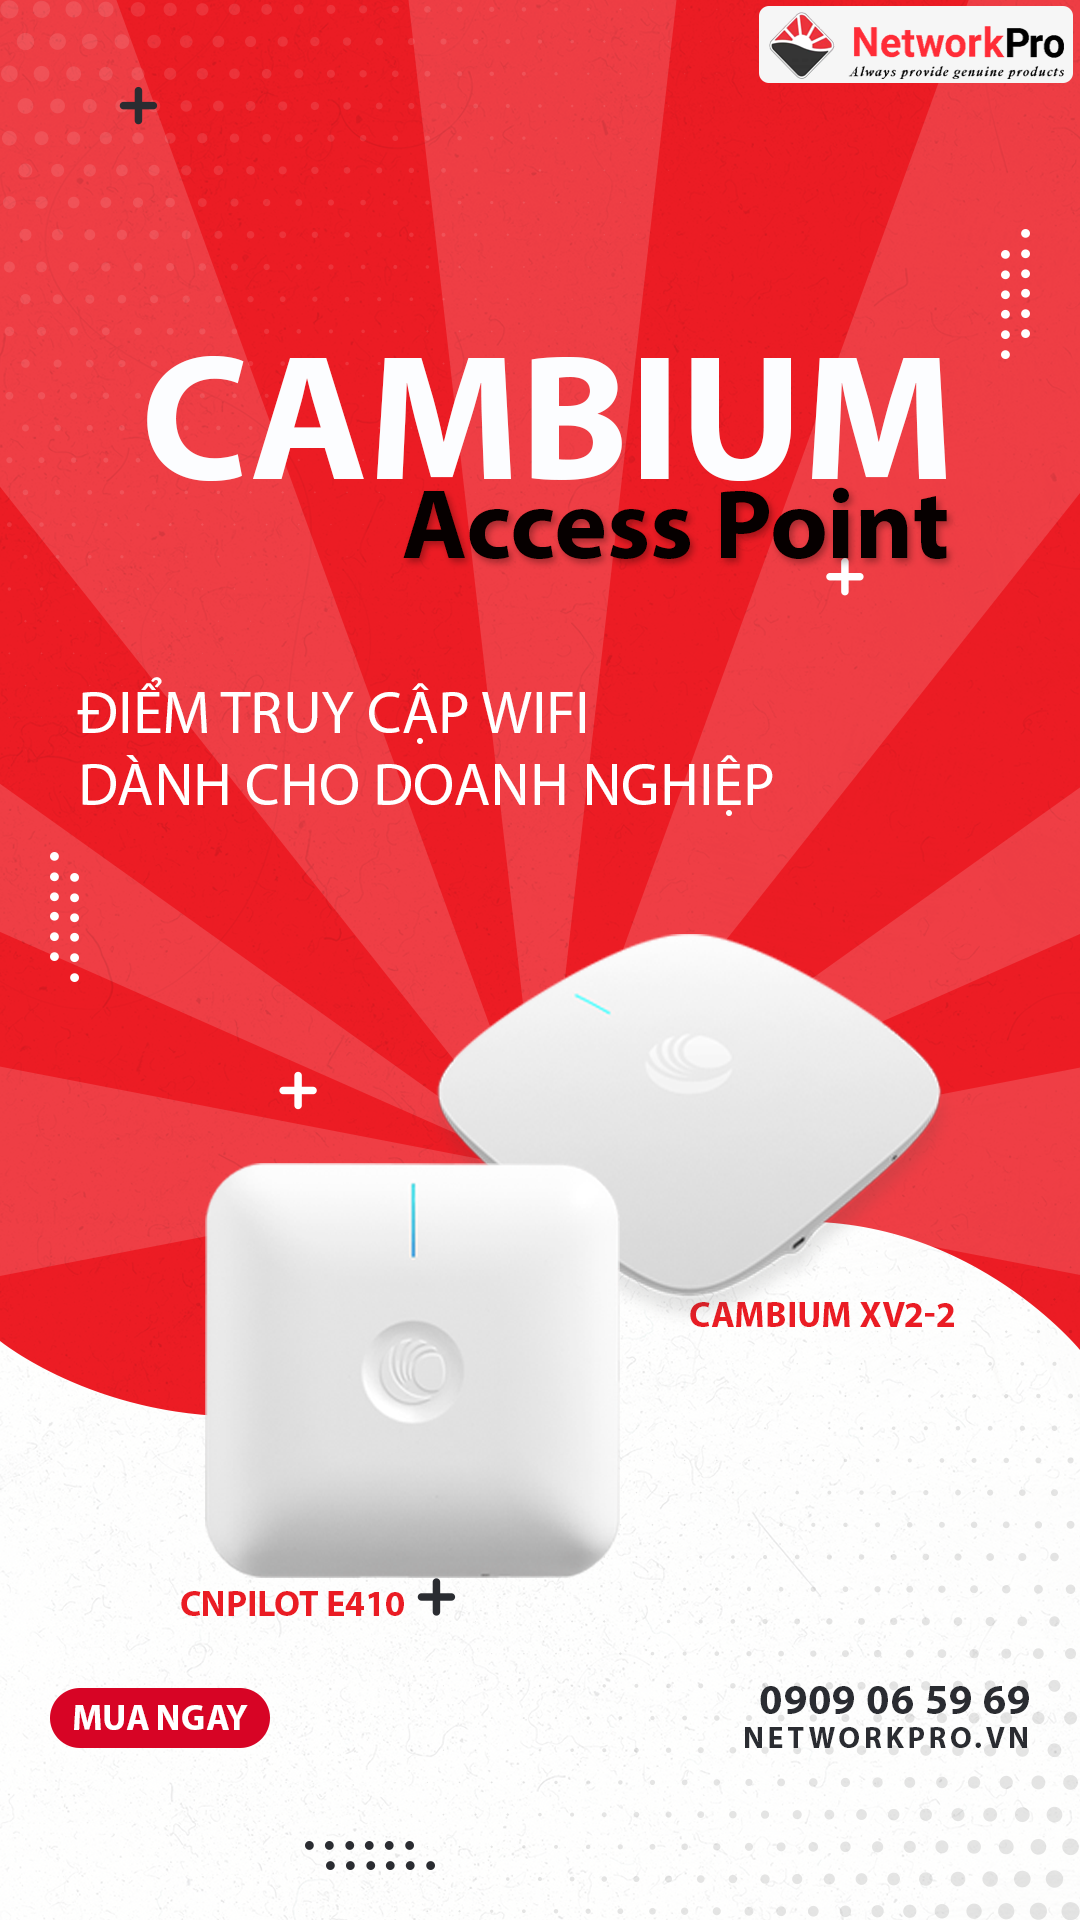 Access Point Cambium chính hãng - Mua Ngay Tại NetworkPro